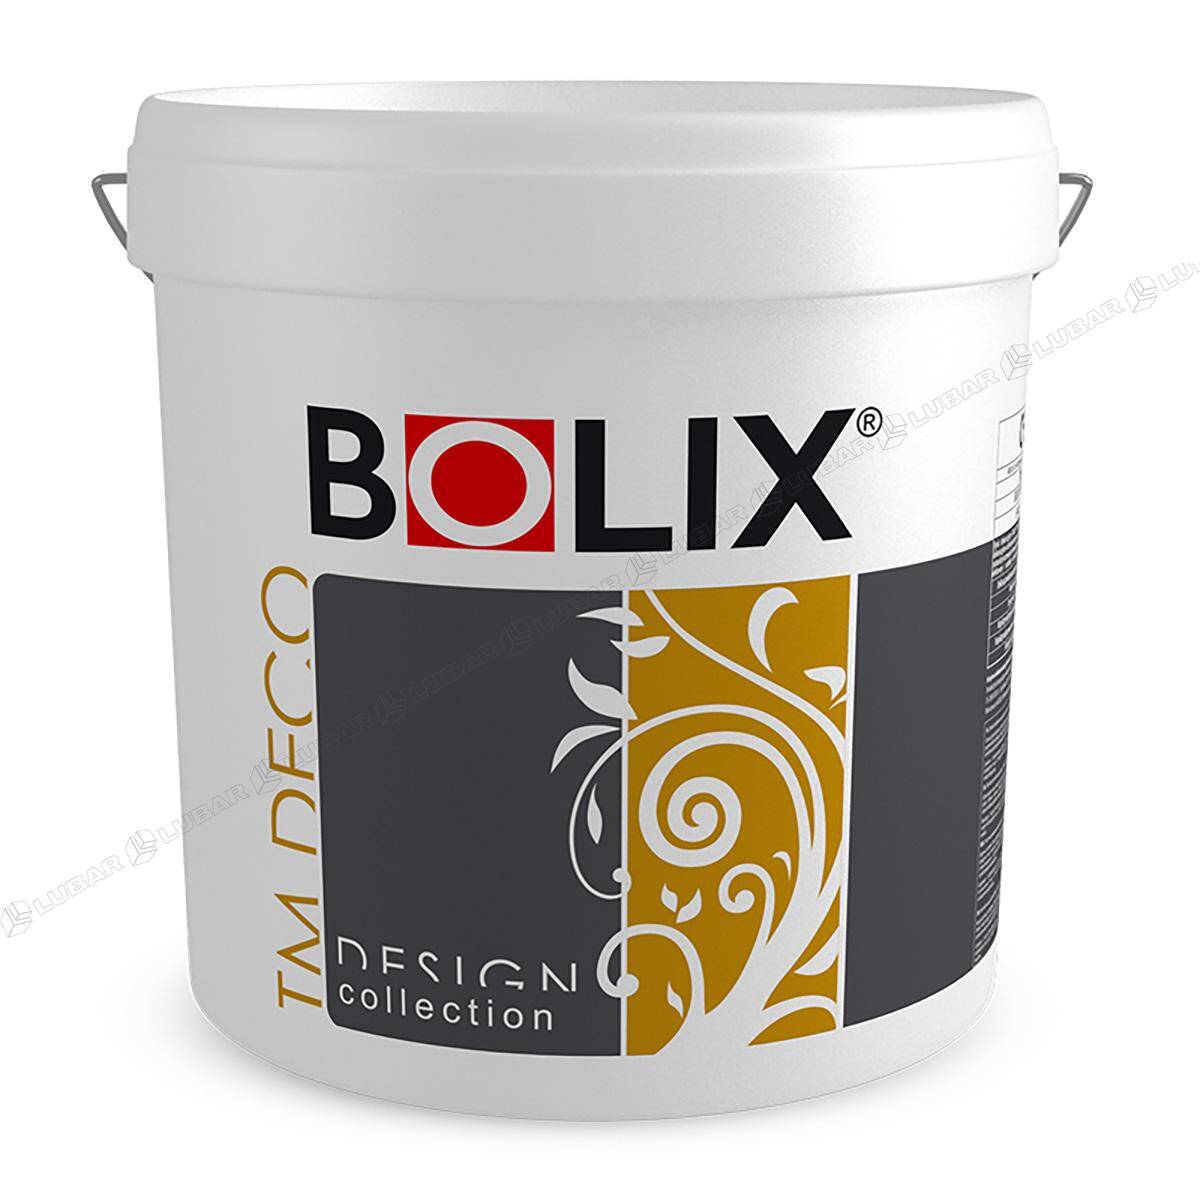 BOLIX TM DECO Tynk dekoracyjny z miką 25 kg PERFECT HARMONY TMD20